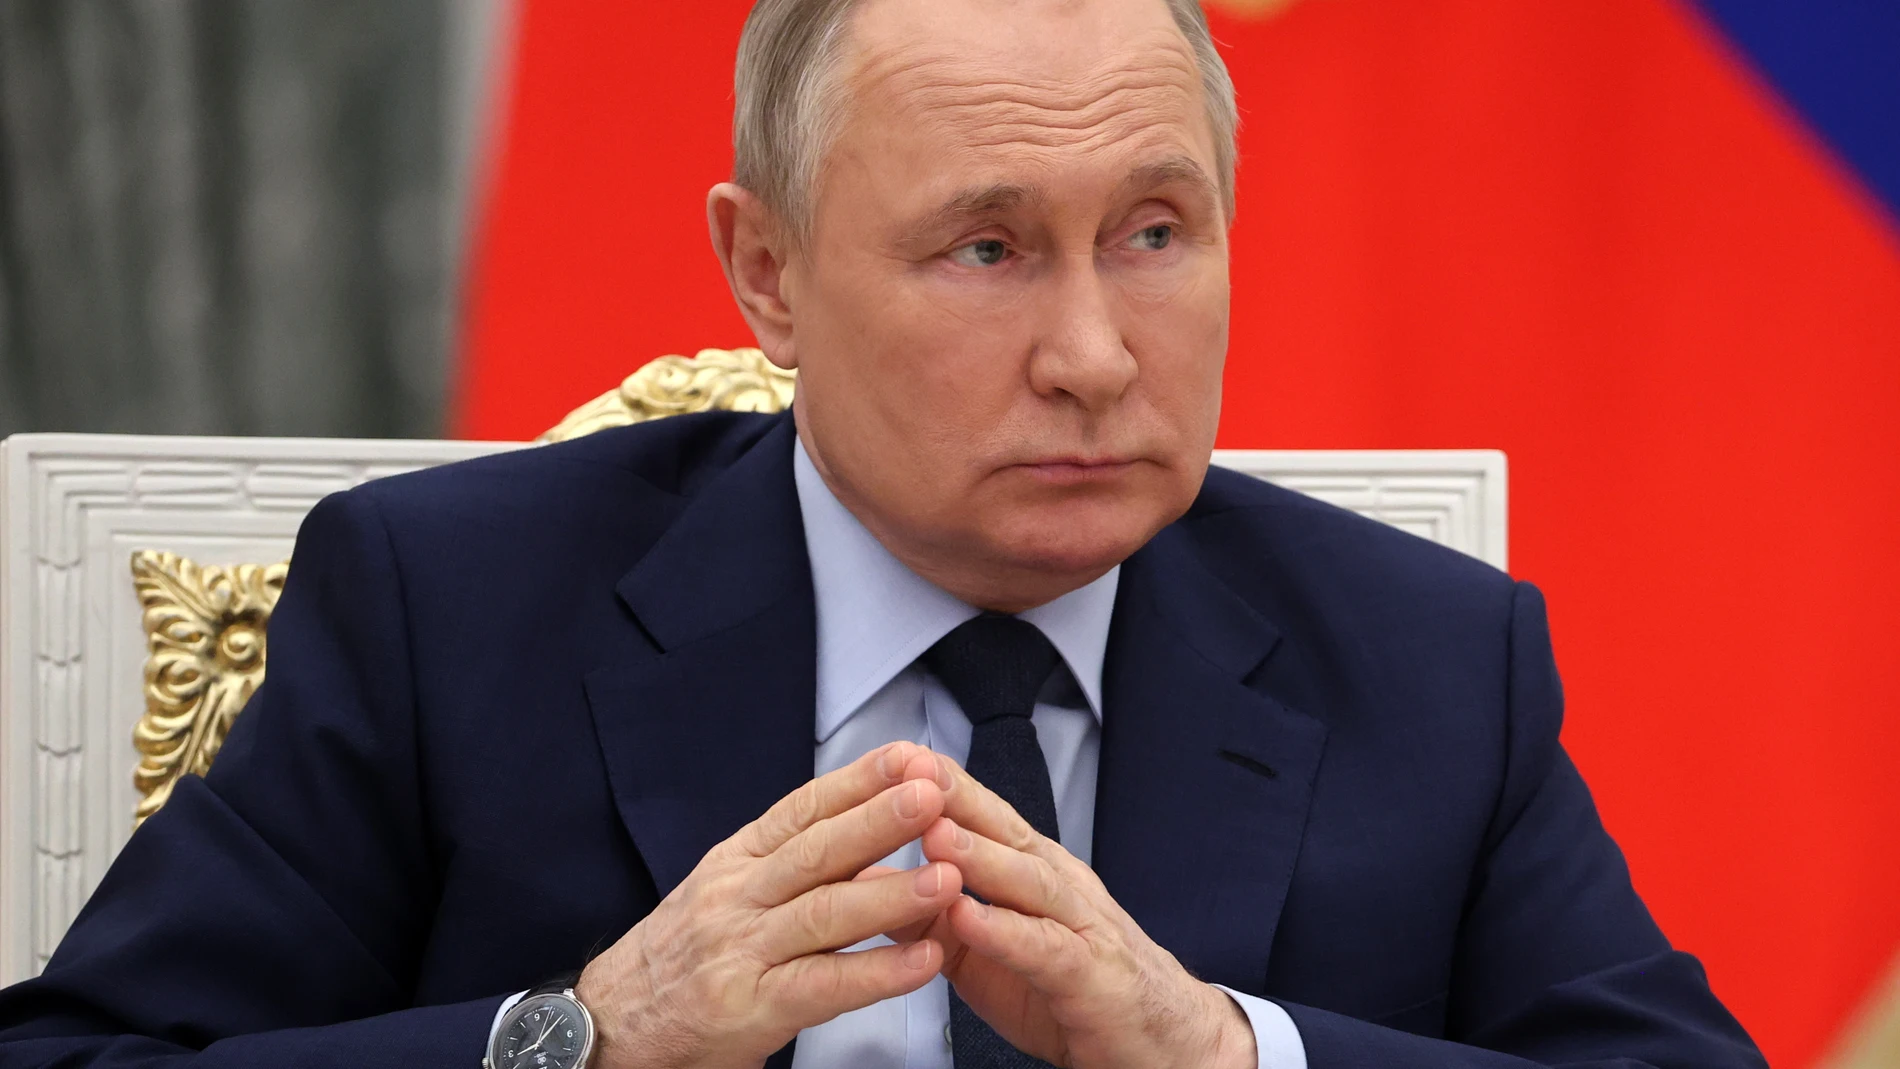 La preocupación por la salud del presidente ruso ha aumentado desde que comenzó la invasión a Ucrania | Fuente: Mikhail Klimentyev, Sputnik, via Associated Press